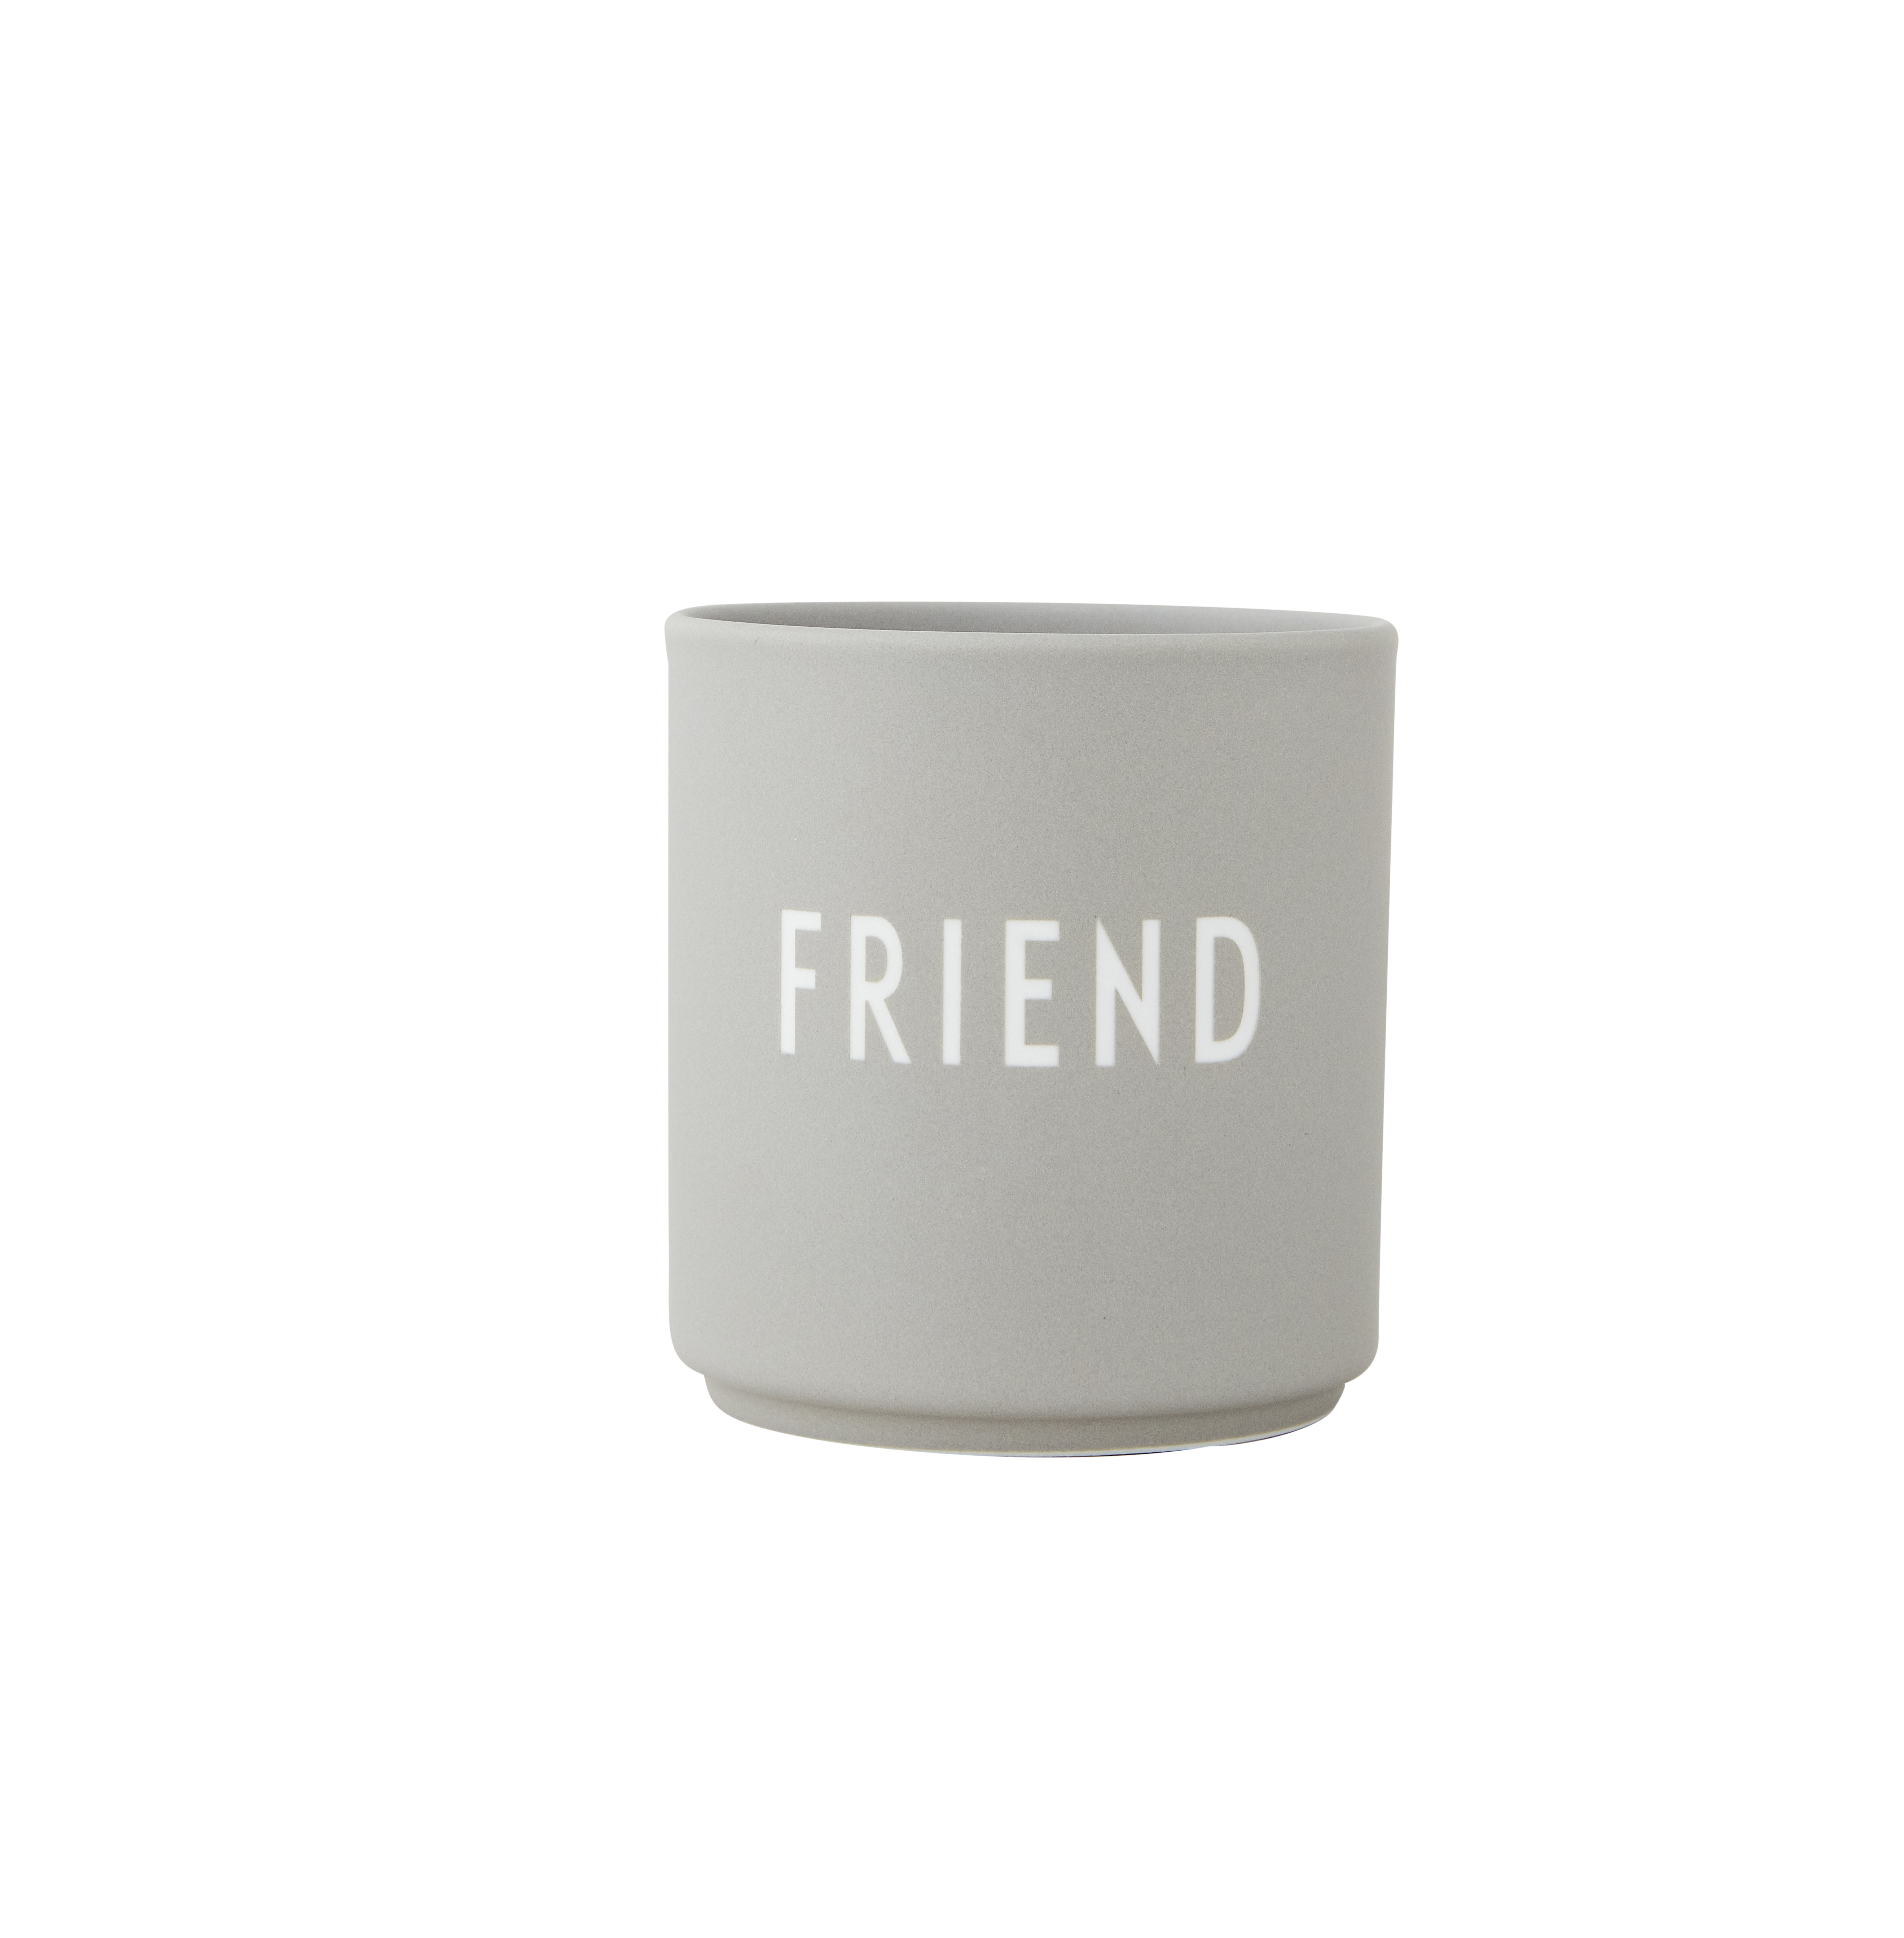 Favourite Cup "FRIEND" (grau)